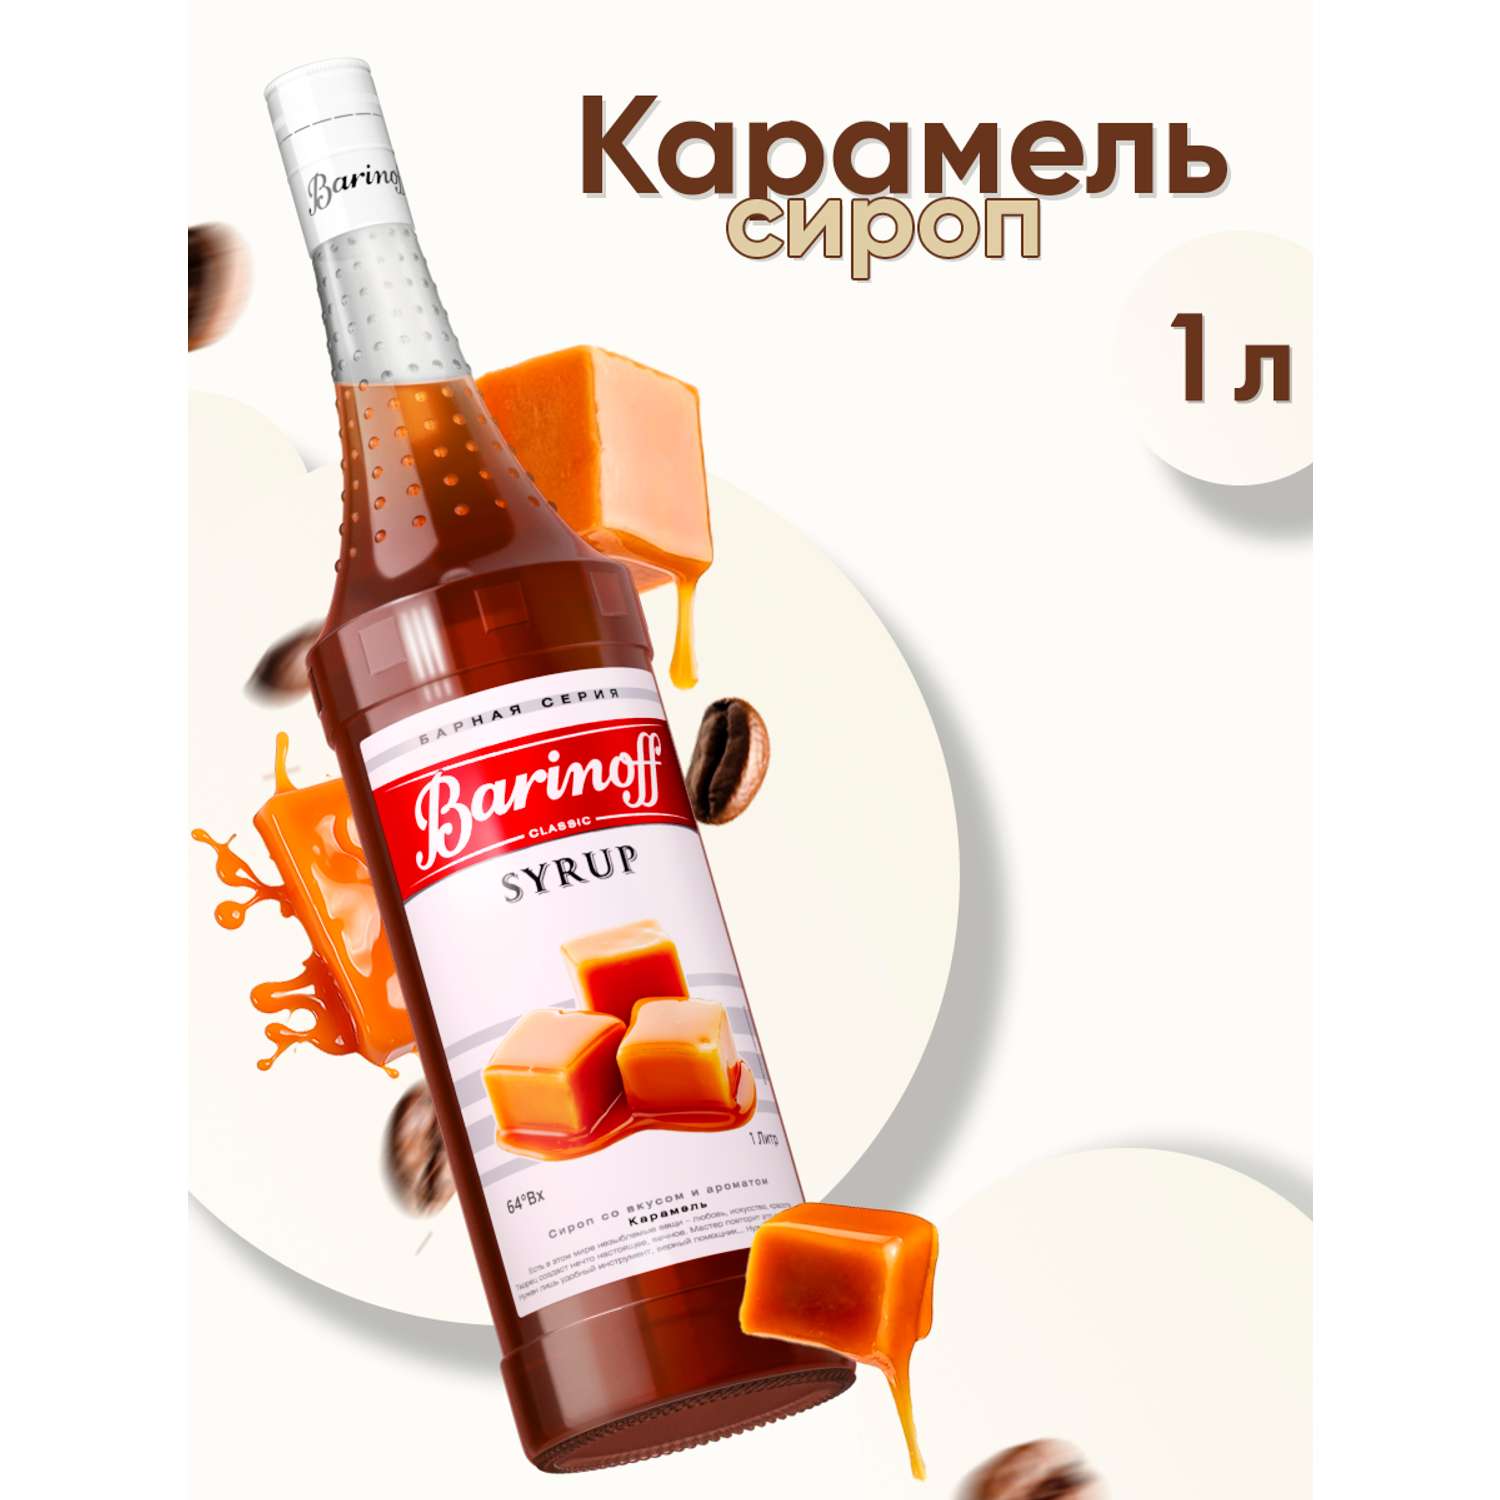 Сироп Barinoff Карамель для кофе и коктейлей 1л - фото 1